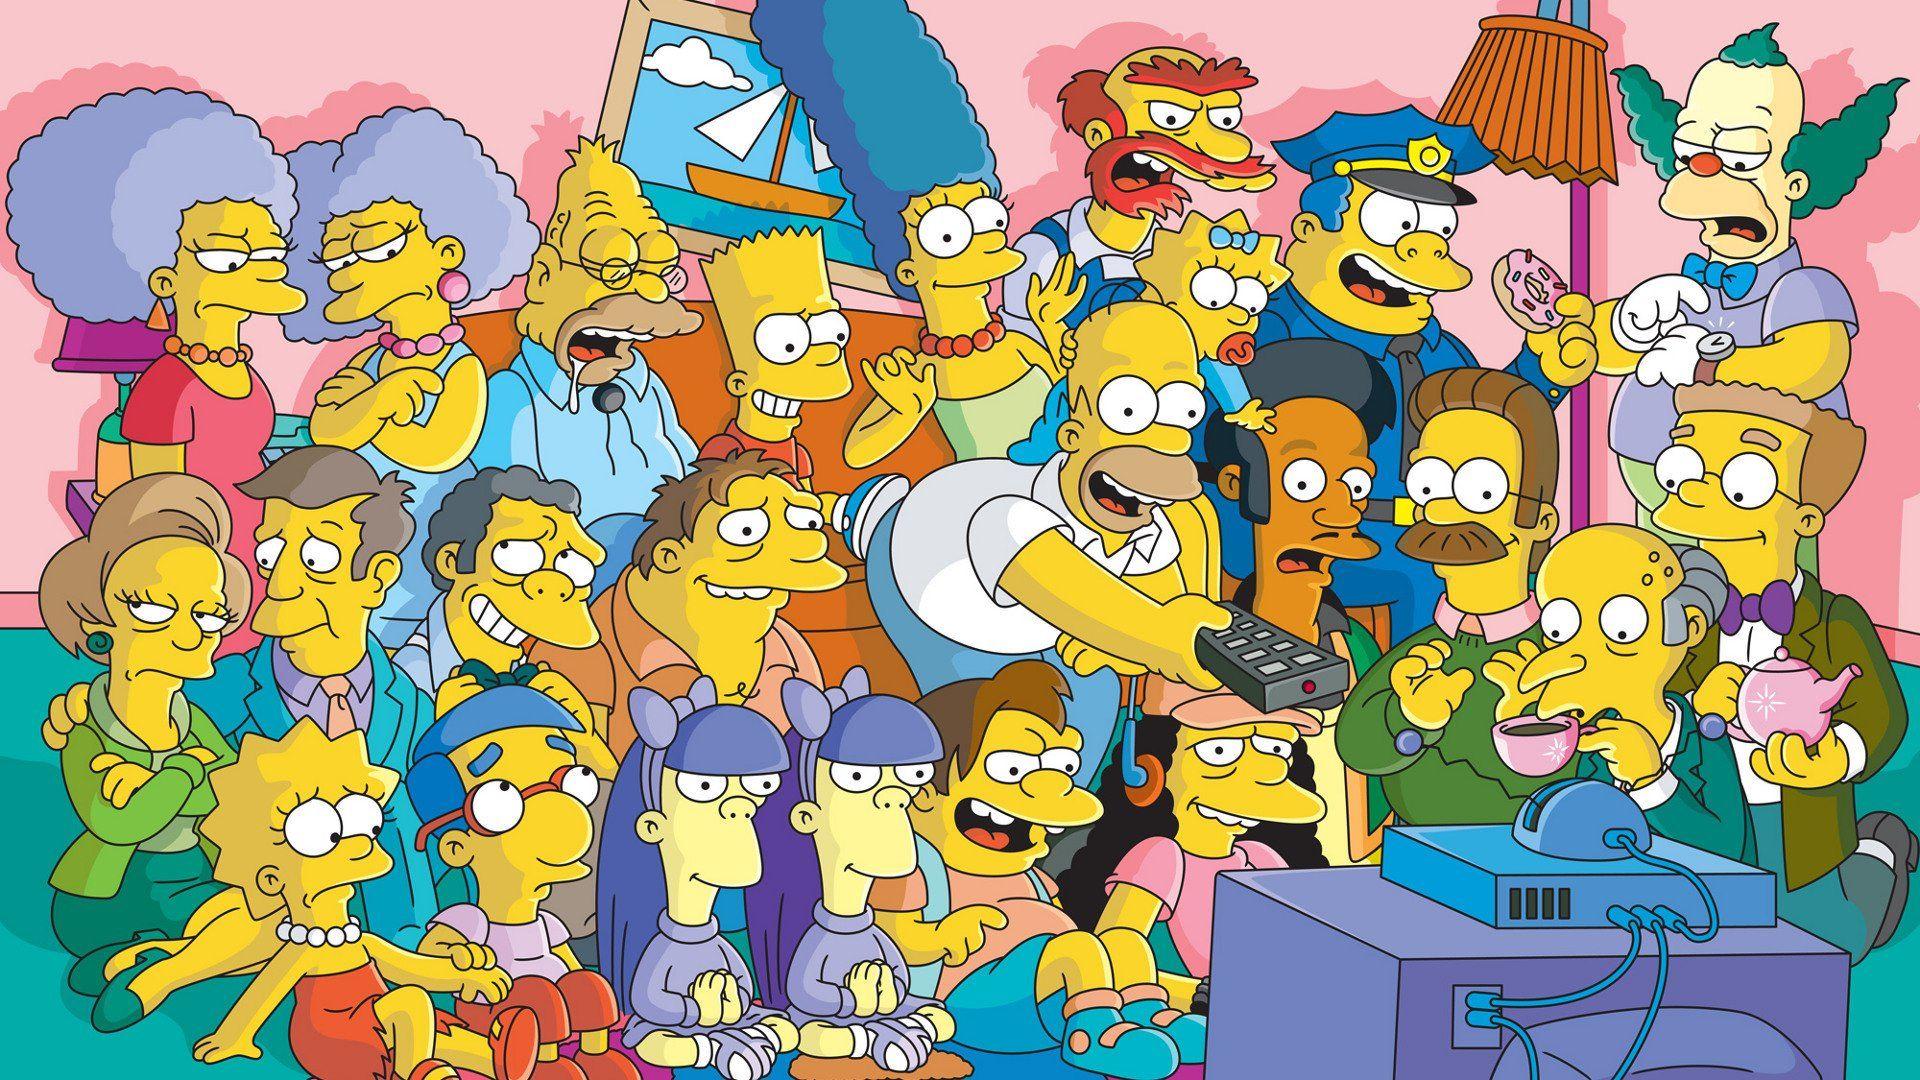 Simpsons PC Wallpapers - Top Những Hình Ảnh Đẹp